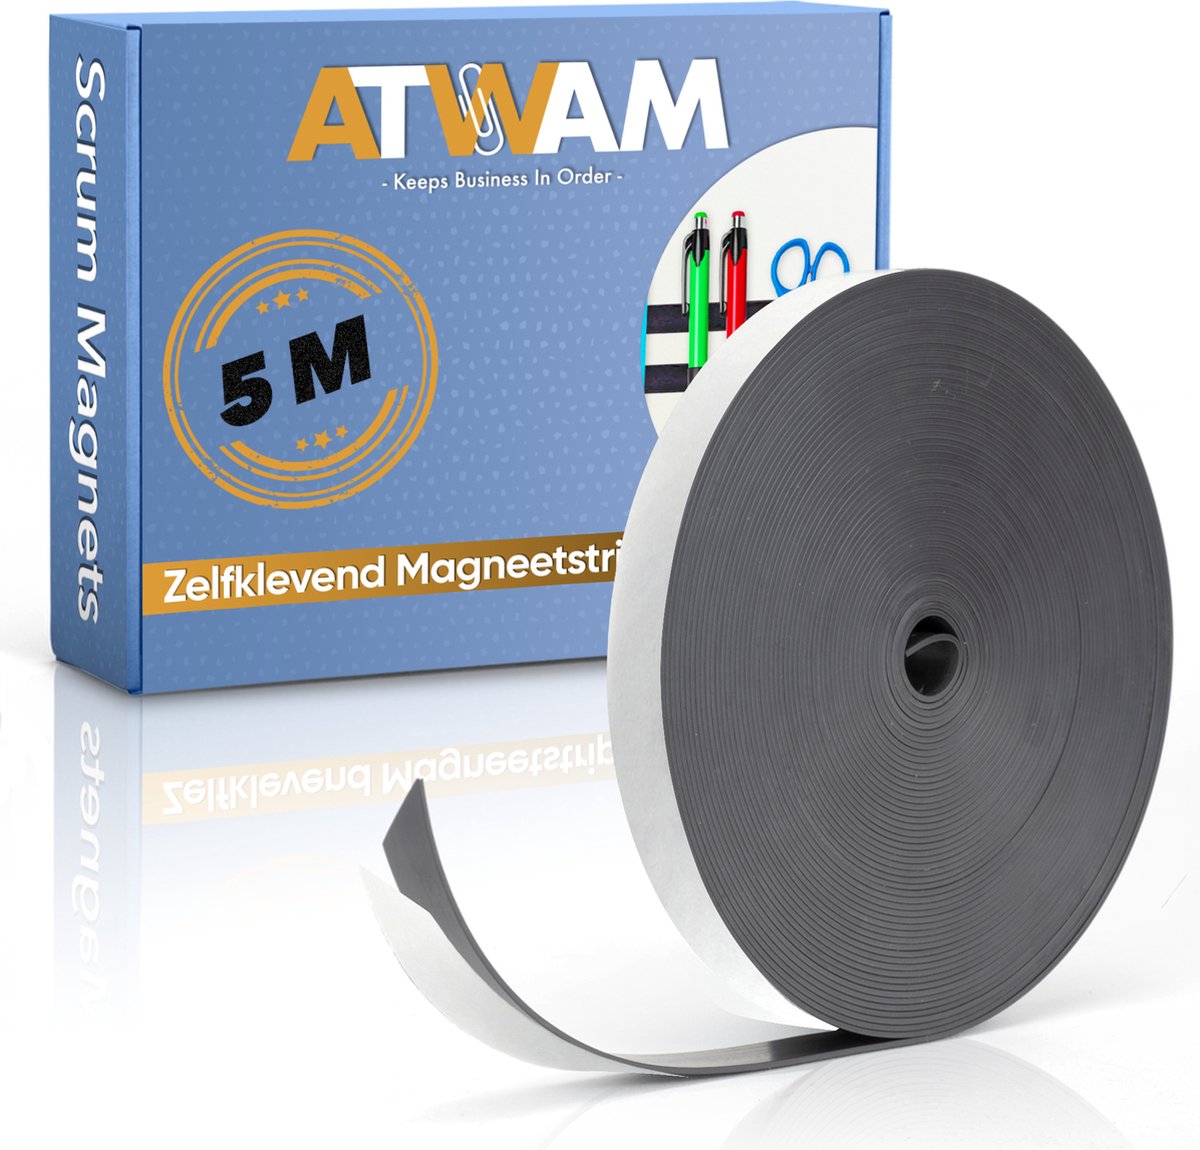 ATWAM Magneetband met Plakstrip - 5 Meter Lang - Magneetstrip - Magneet Tape - Magnetisch Tape - Zelfklevend - Zwart - ATWAM